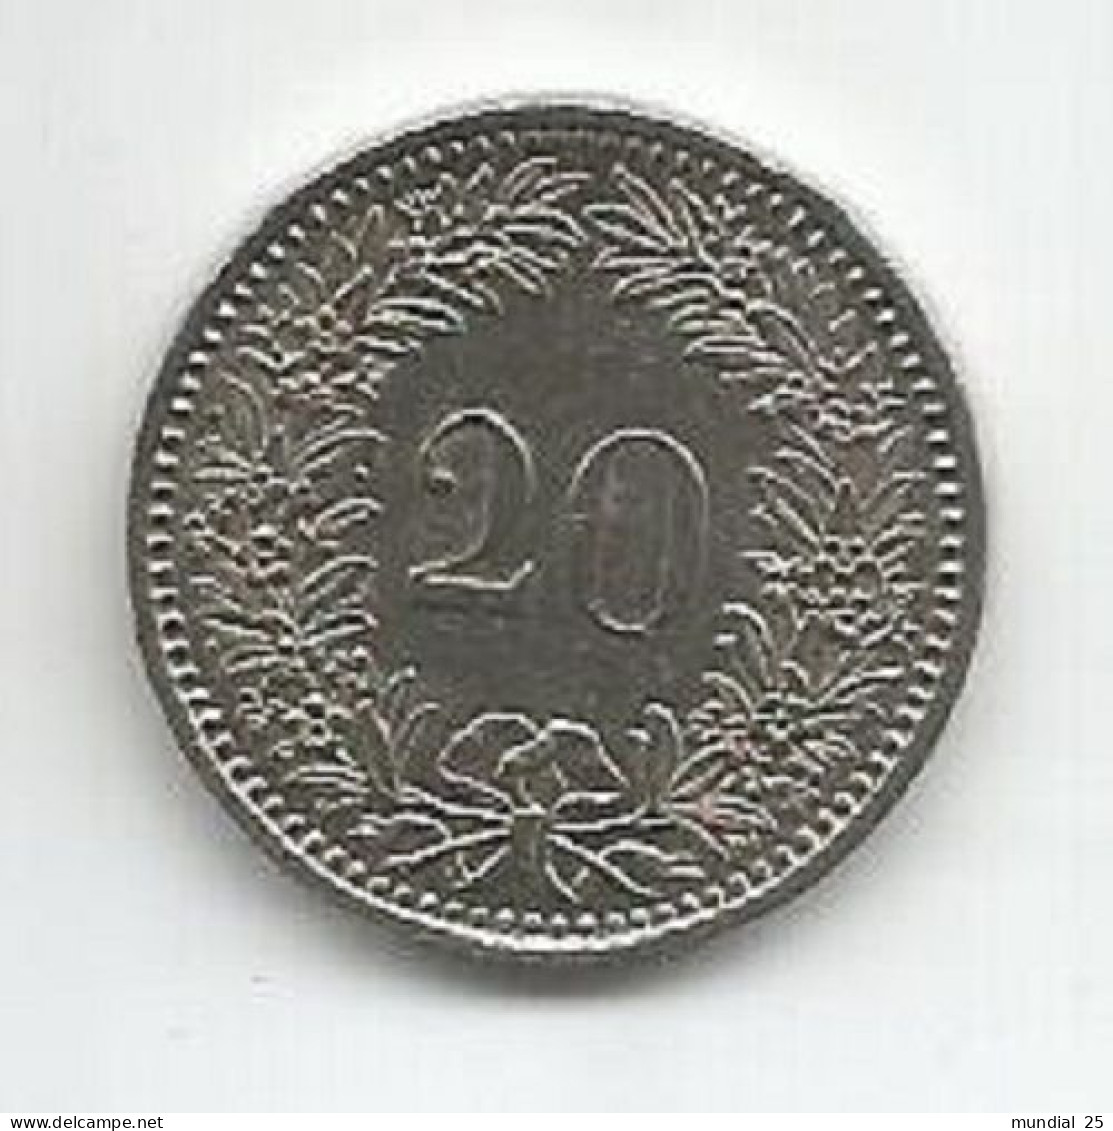 SWITZERLAND 20 RAPPEN 1982 - 20 Centimes / Rappen